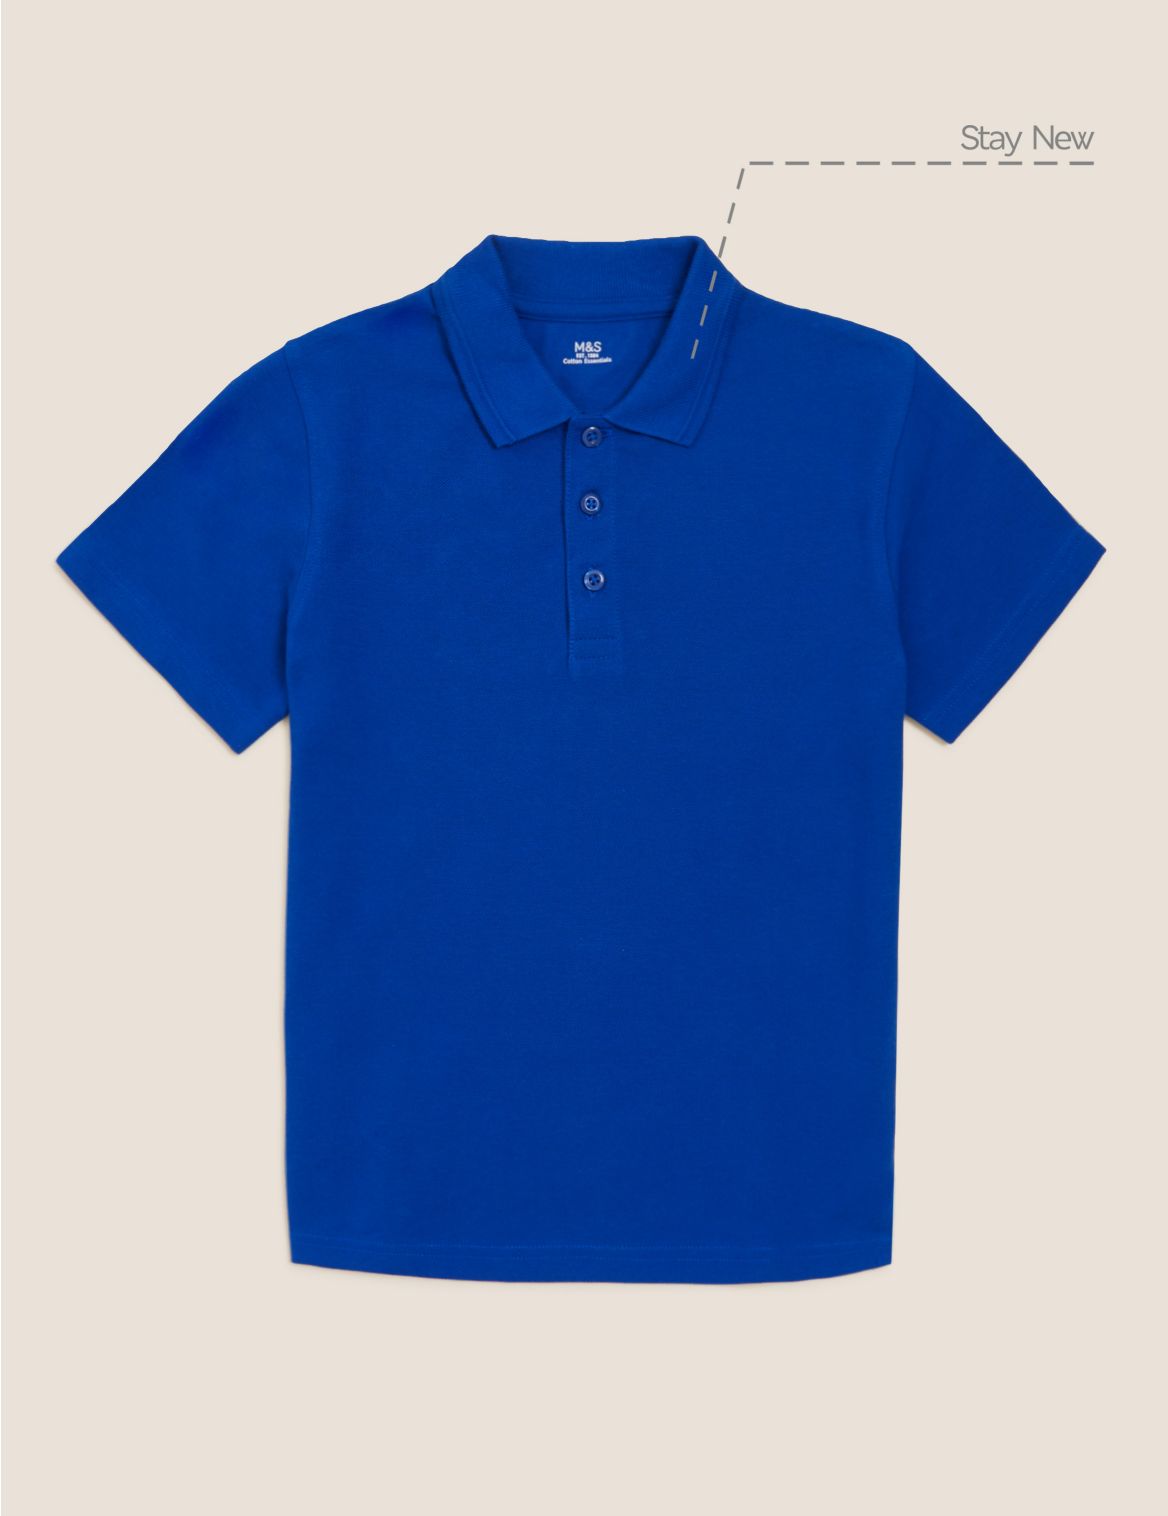 Unisex Pure Cotton Polo Shirt blue